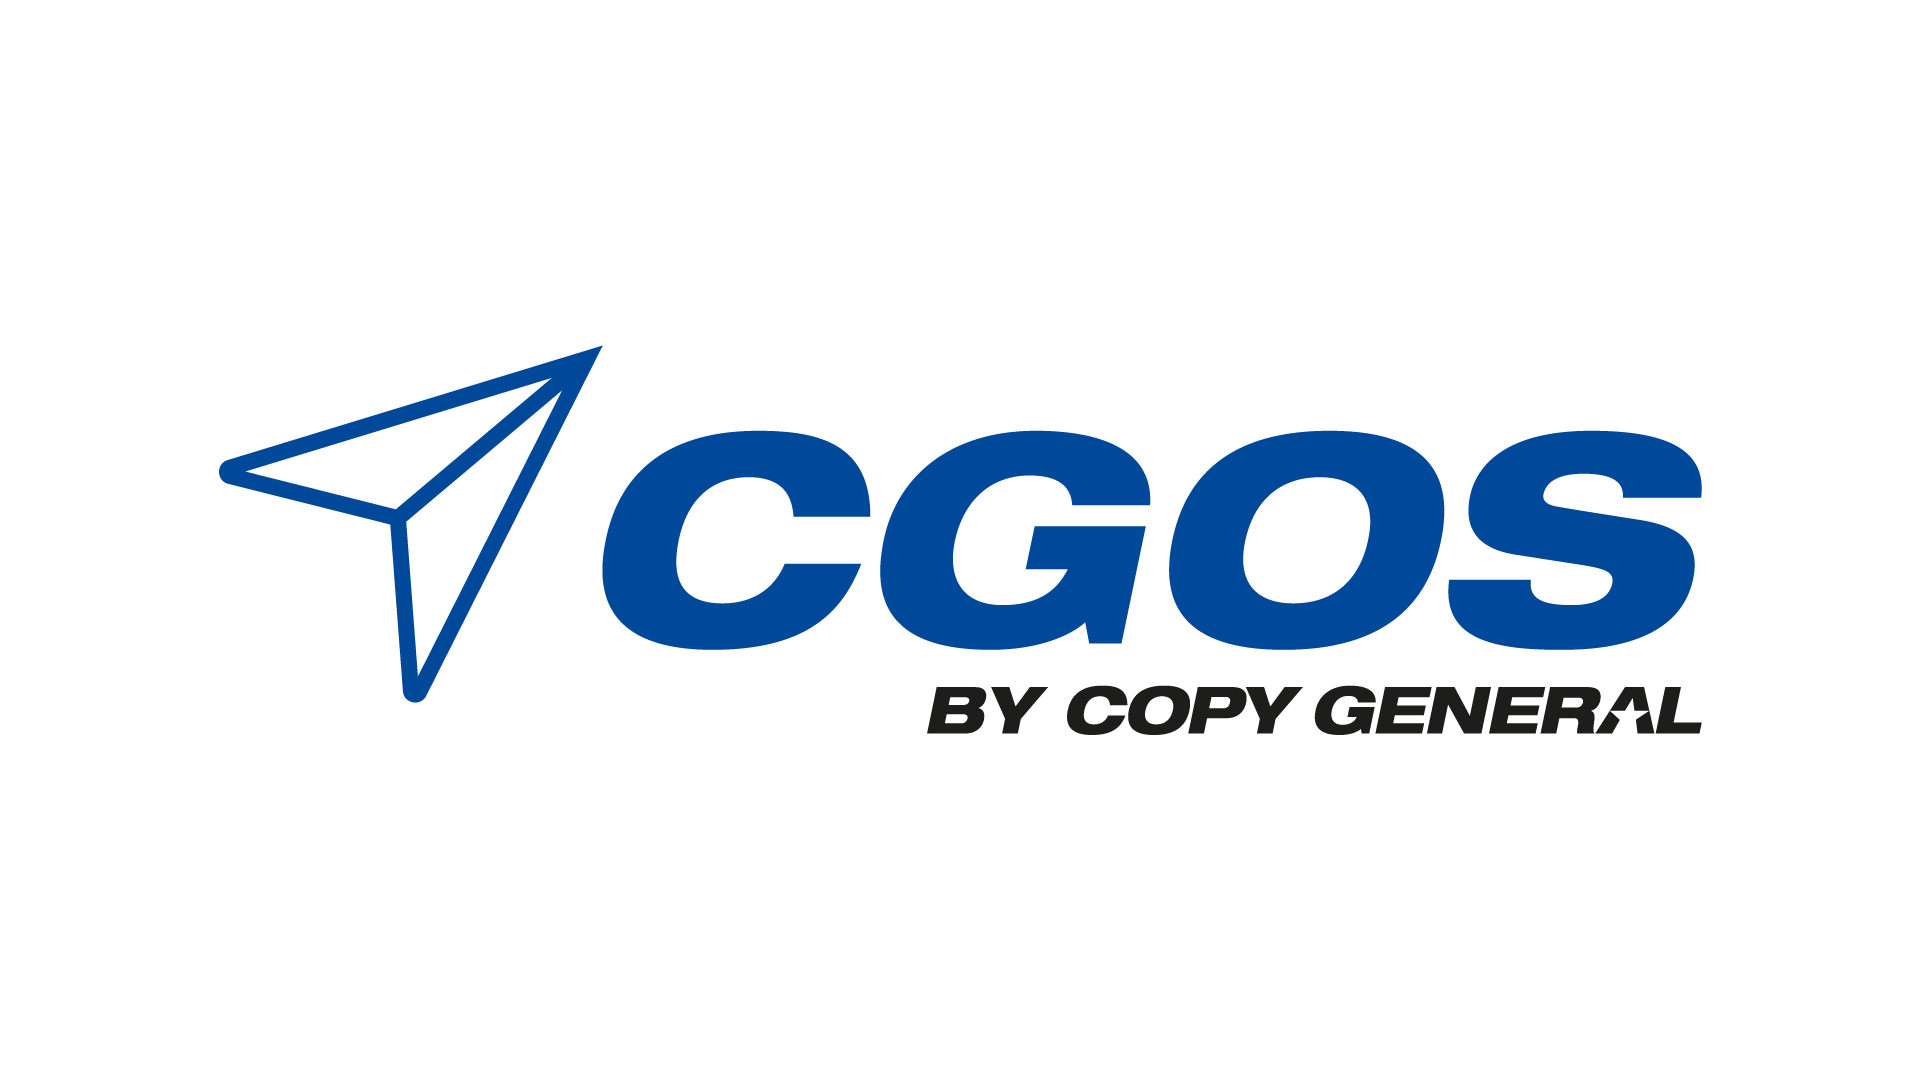 Nový web pro firmu Copy General: Efektivní prezentace divize CGOS